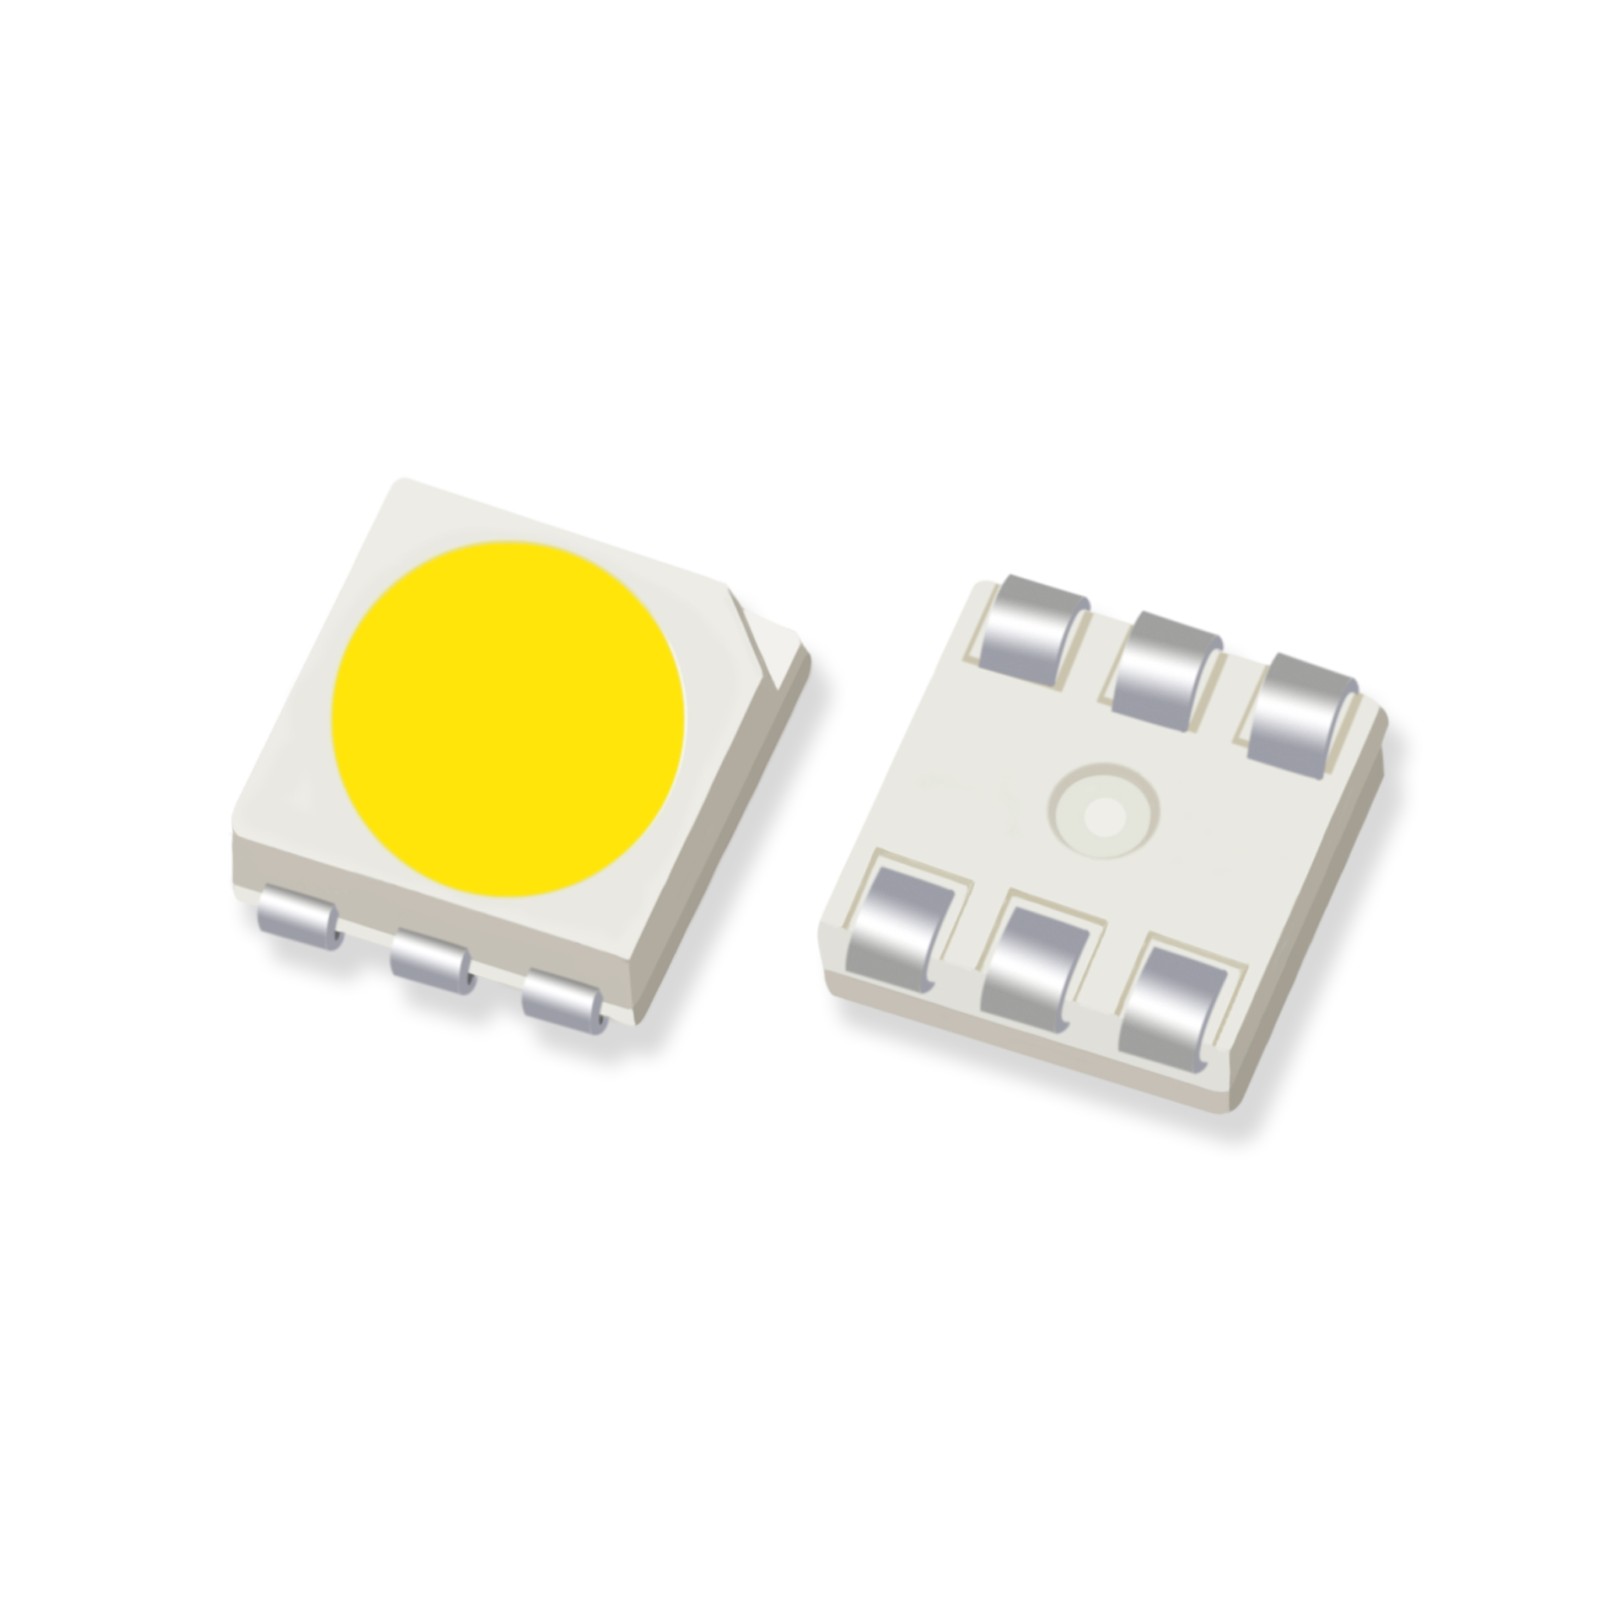 LED灯珠用于洗墙灯分类